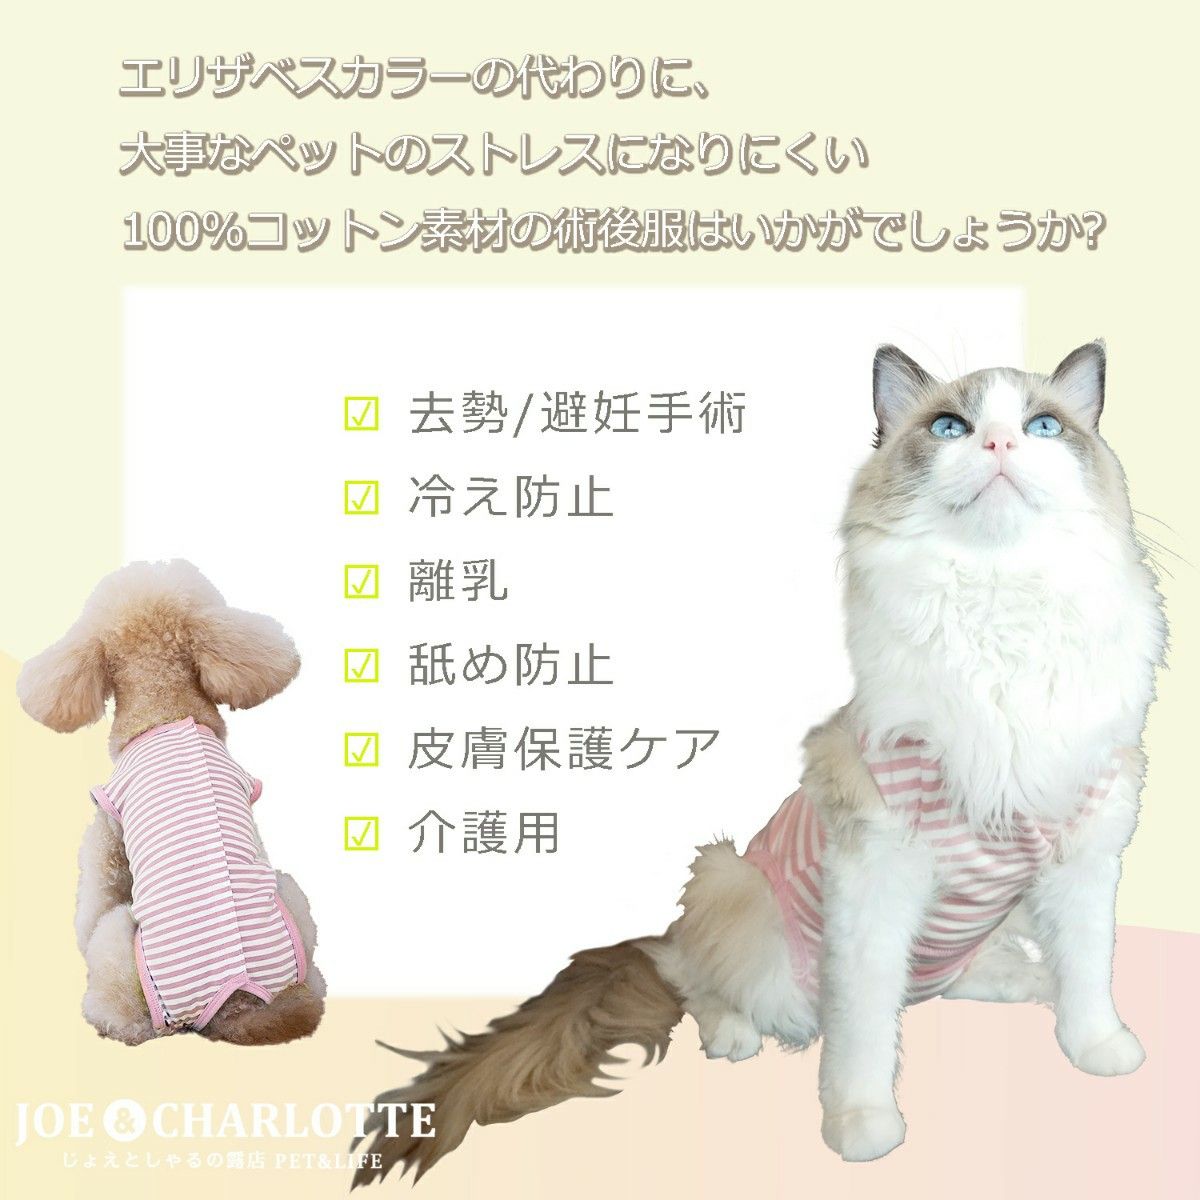 【ピンクL】猫犬 術後服 ウェア 雄雌兼用 エリザベスカラーの代わりに 舐め防止 ペット服 エリザベスウェア